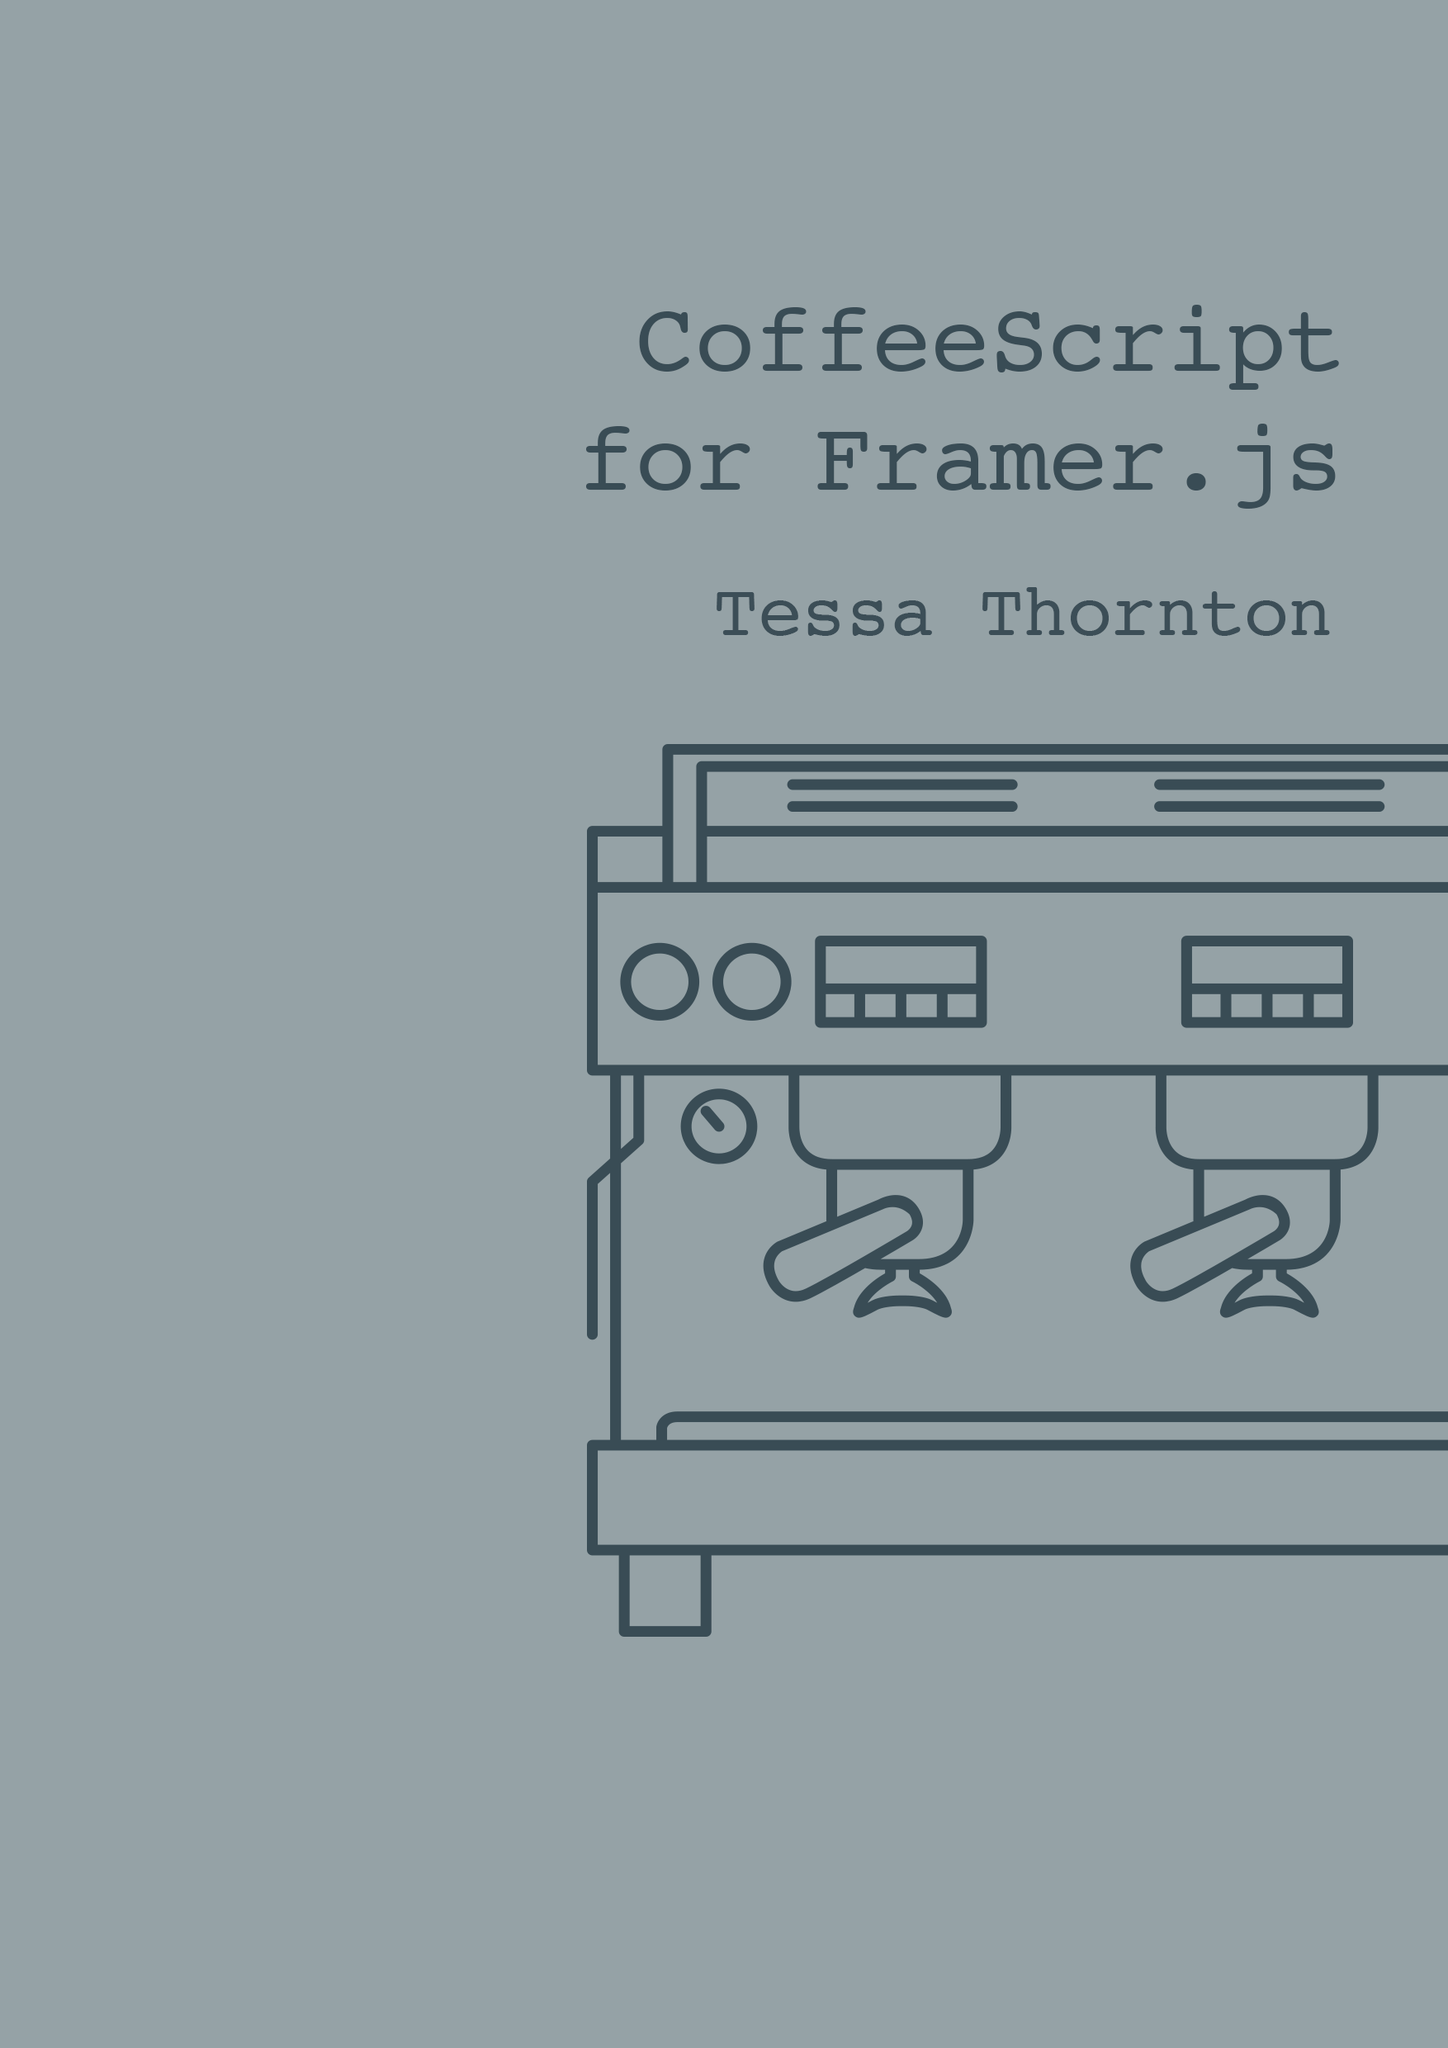 CoffeeScript for Framer.js